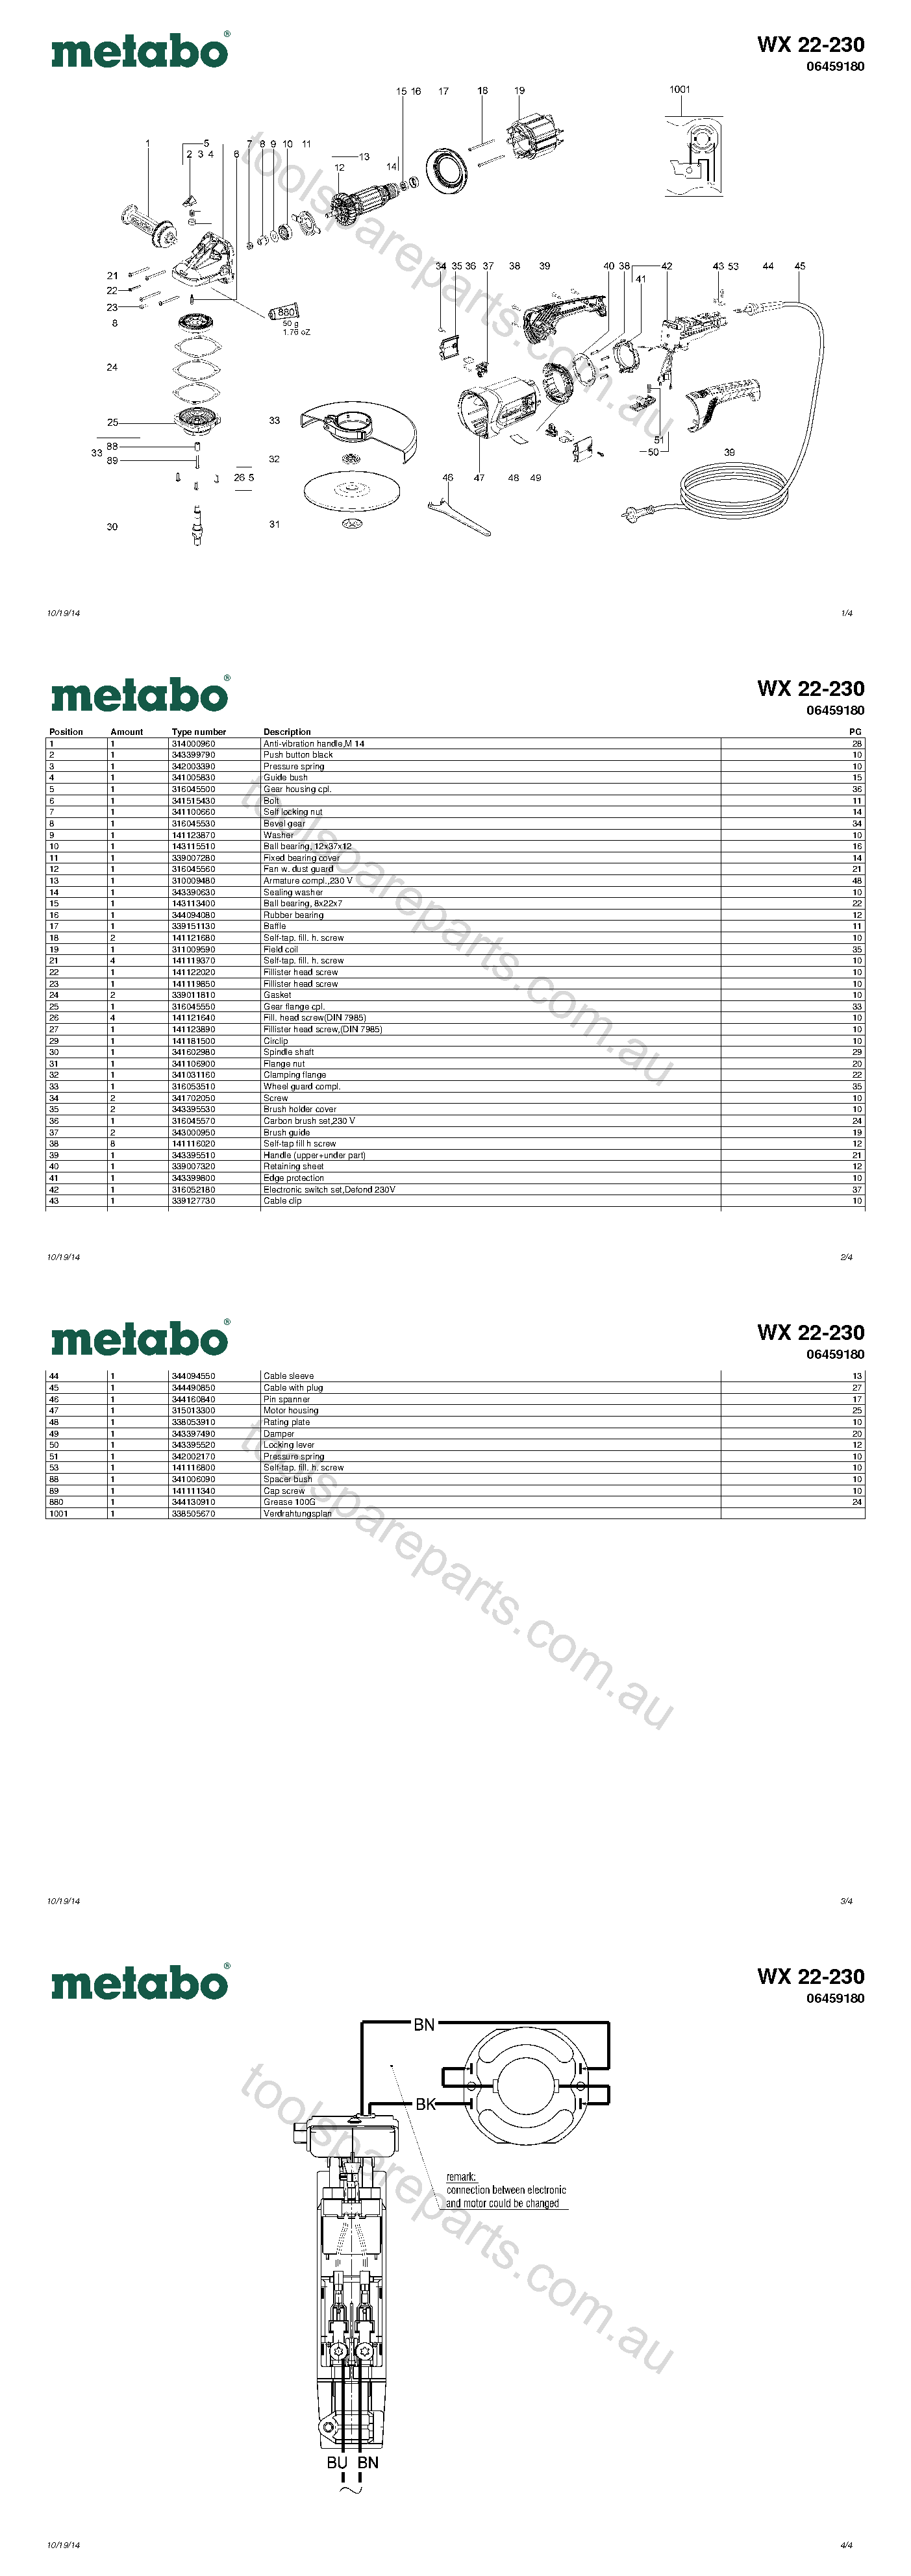 Metabo WX 22-230 06459180  Diagram 1